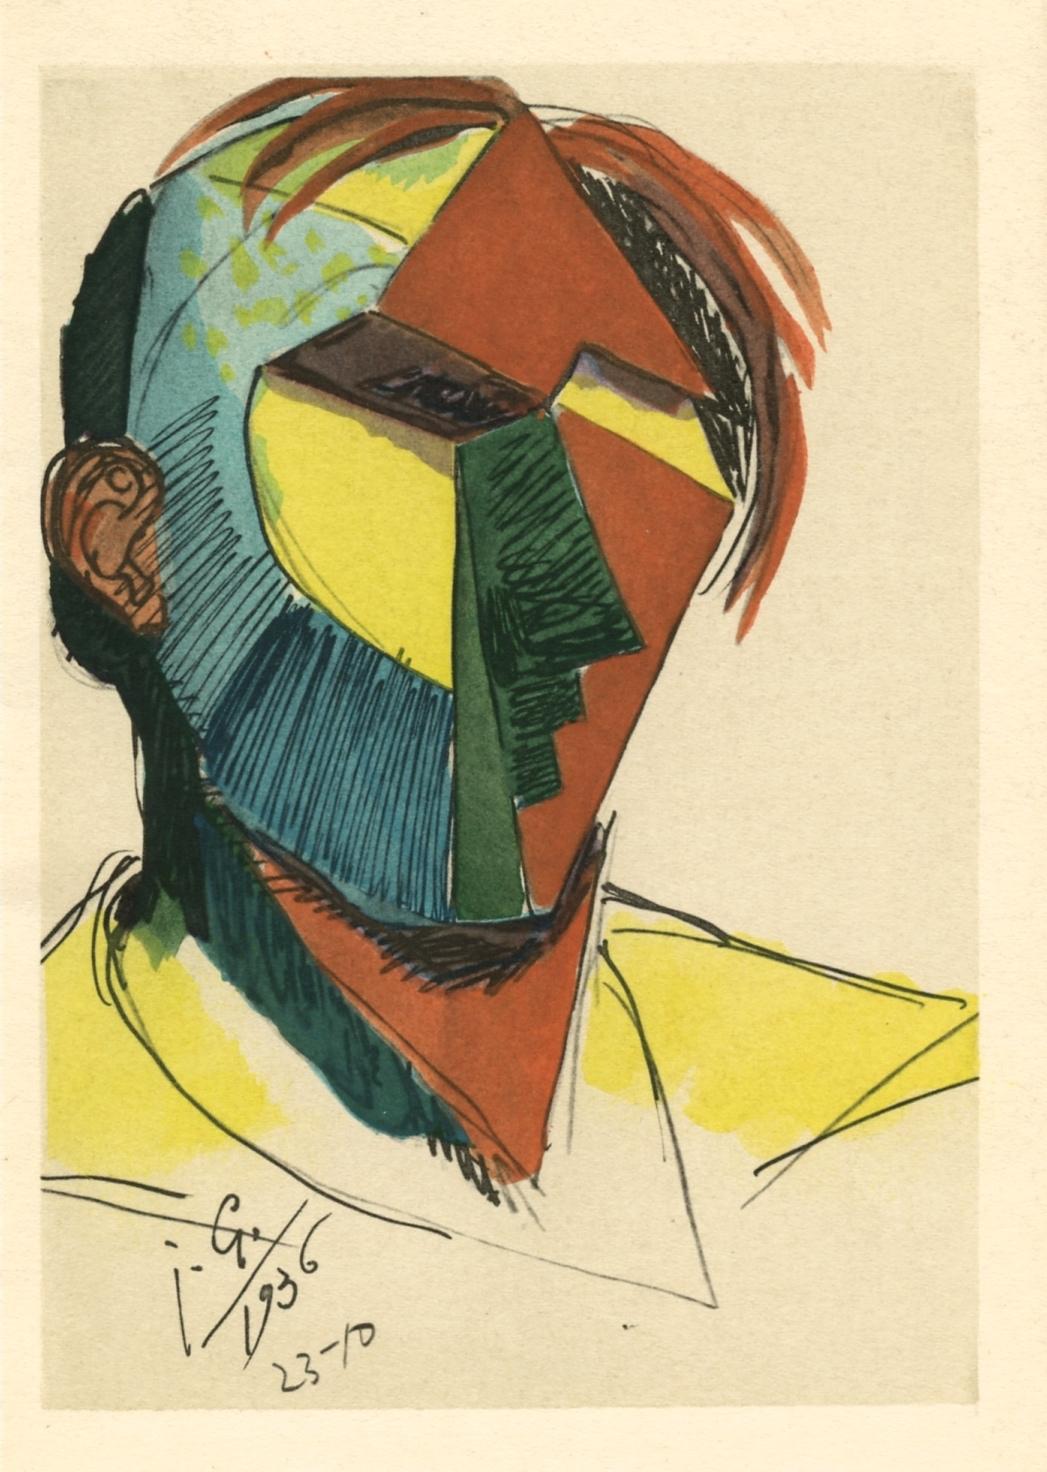 (after) Julio Gonzalez - "Tete aux cheveux defaits" pochoir - Print by Julio González